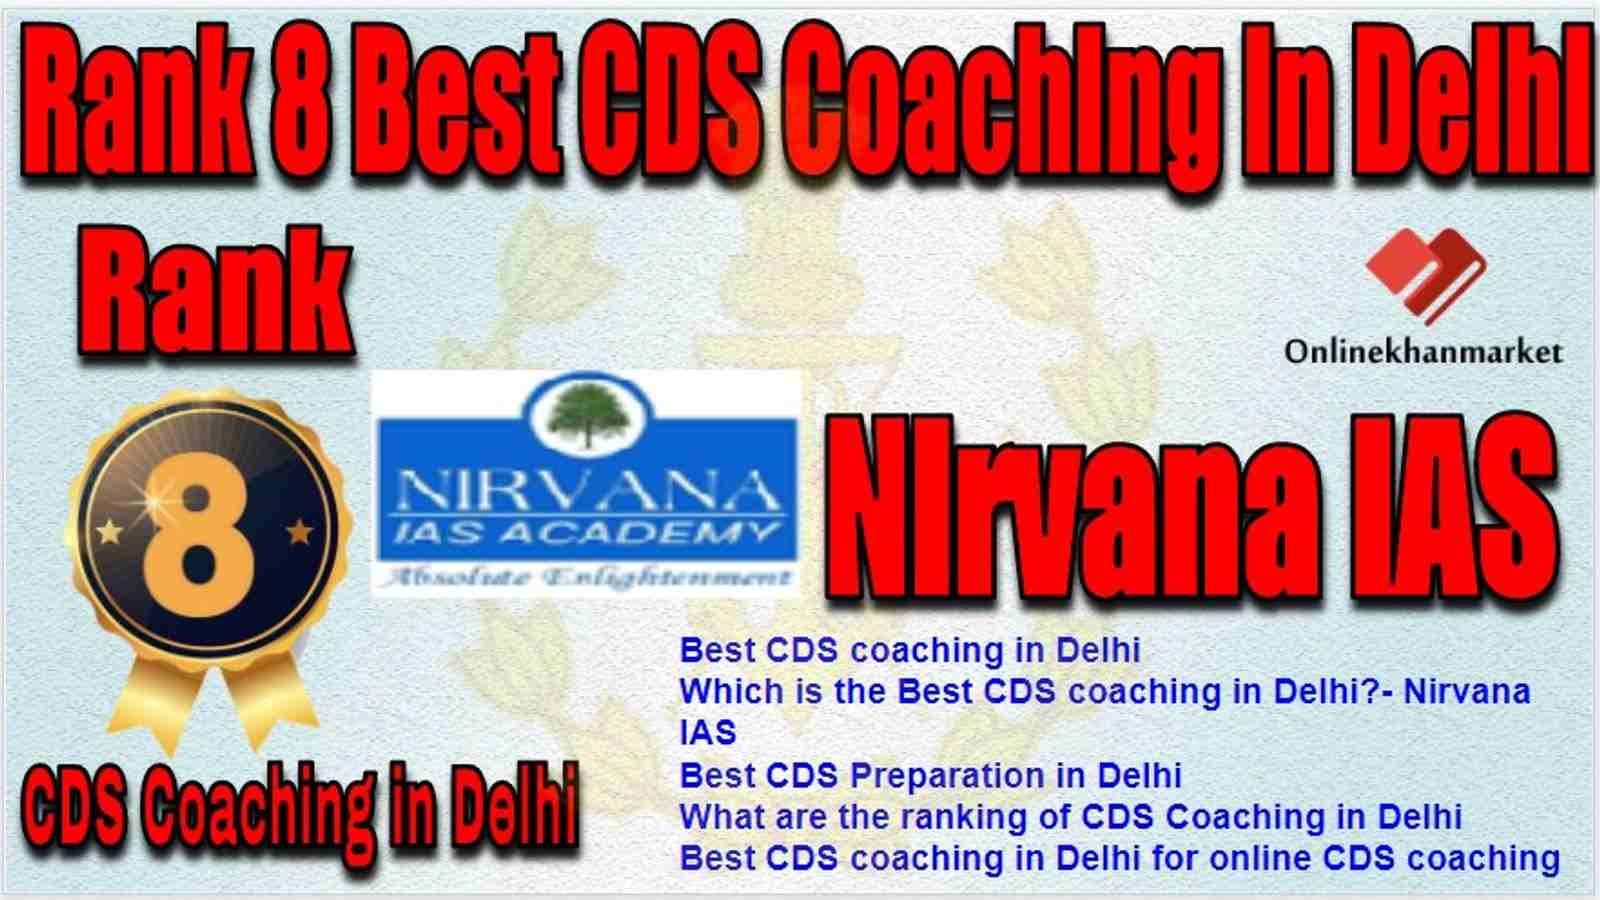 Rank 8 Best CDS Coaching in delhi